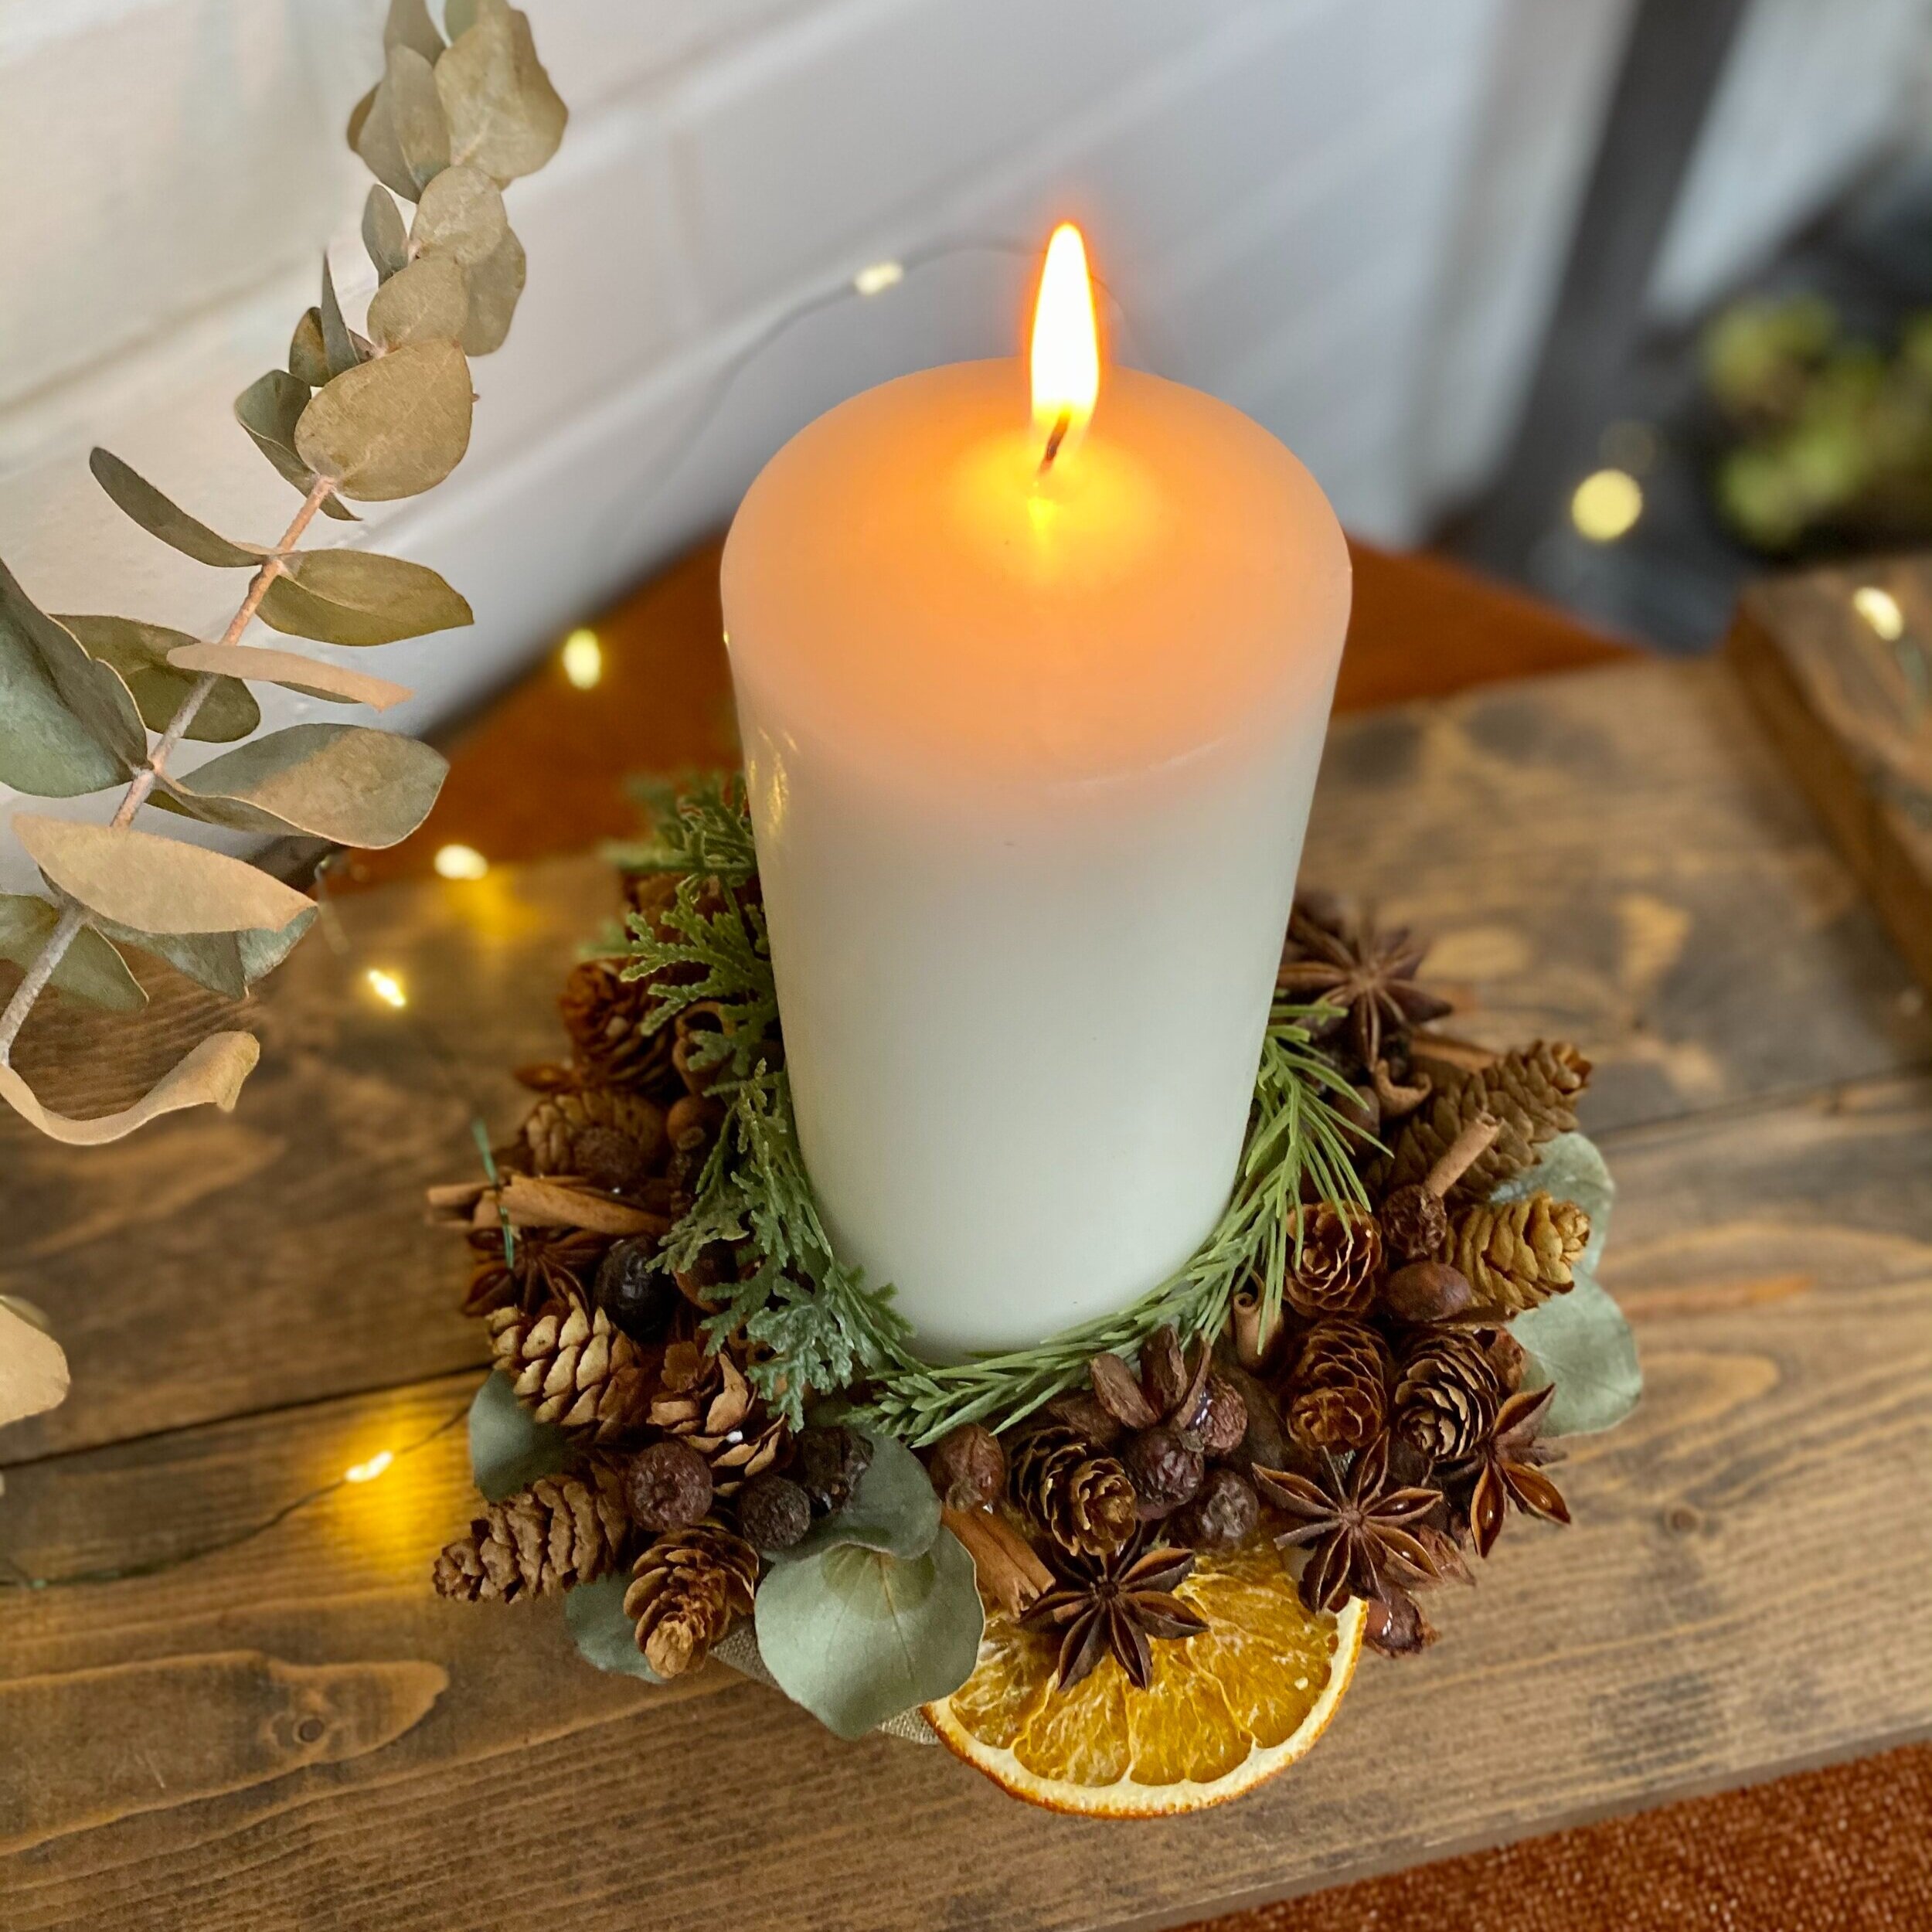 Comment fabriquer un chandelier décoratif pour les fêtes ? — daphlive